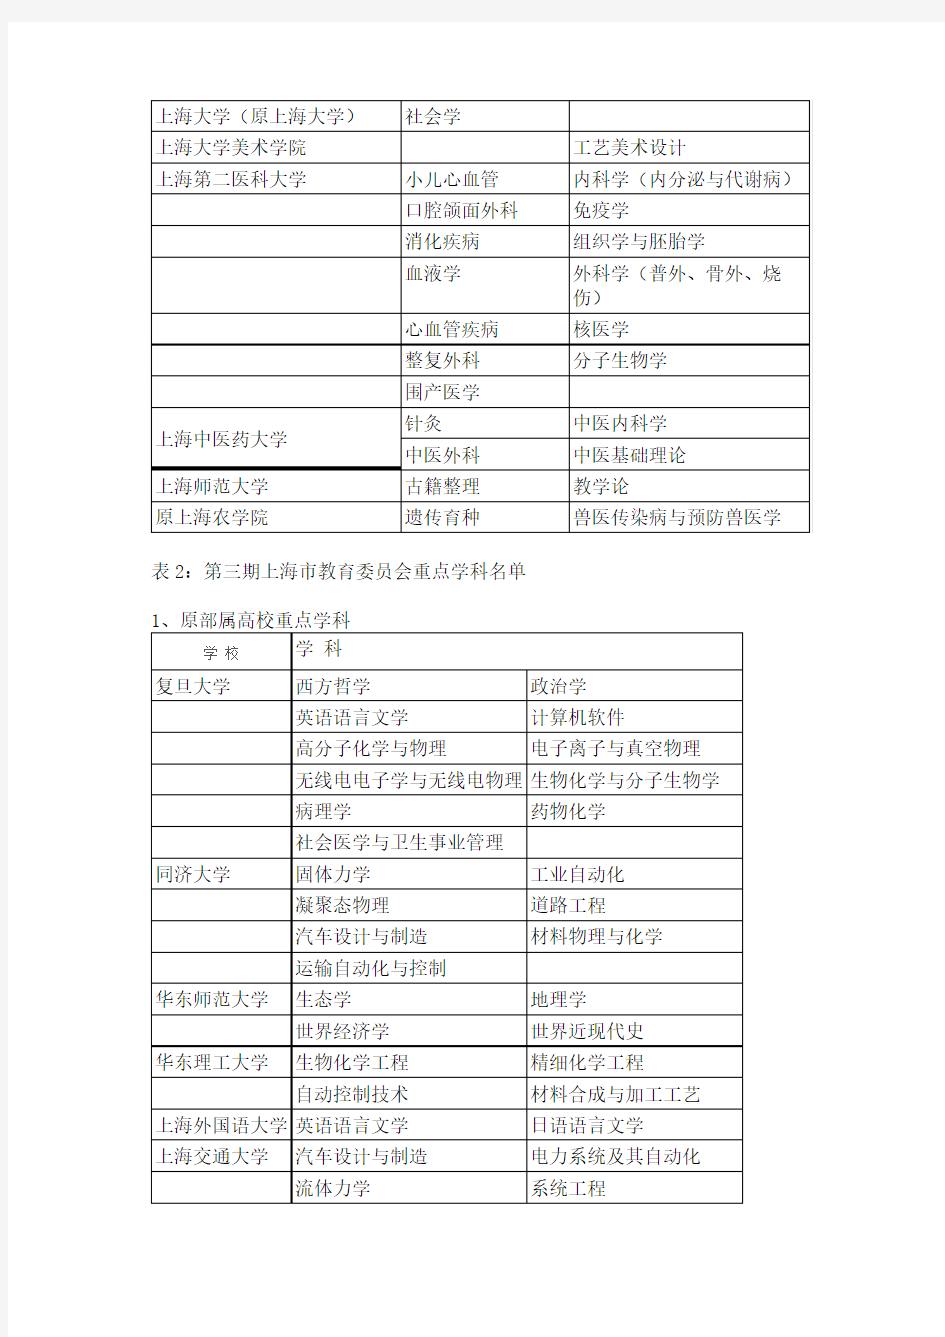 上海市教育委员会重点学科名单全,截至2014年共四期